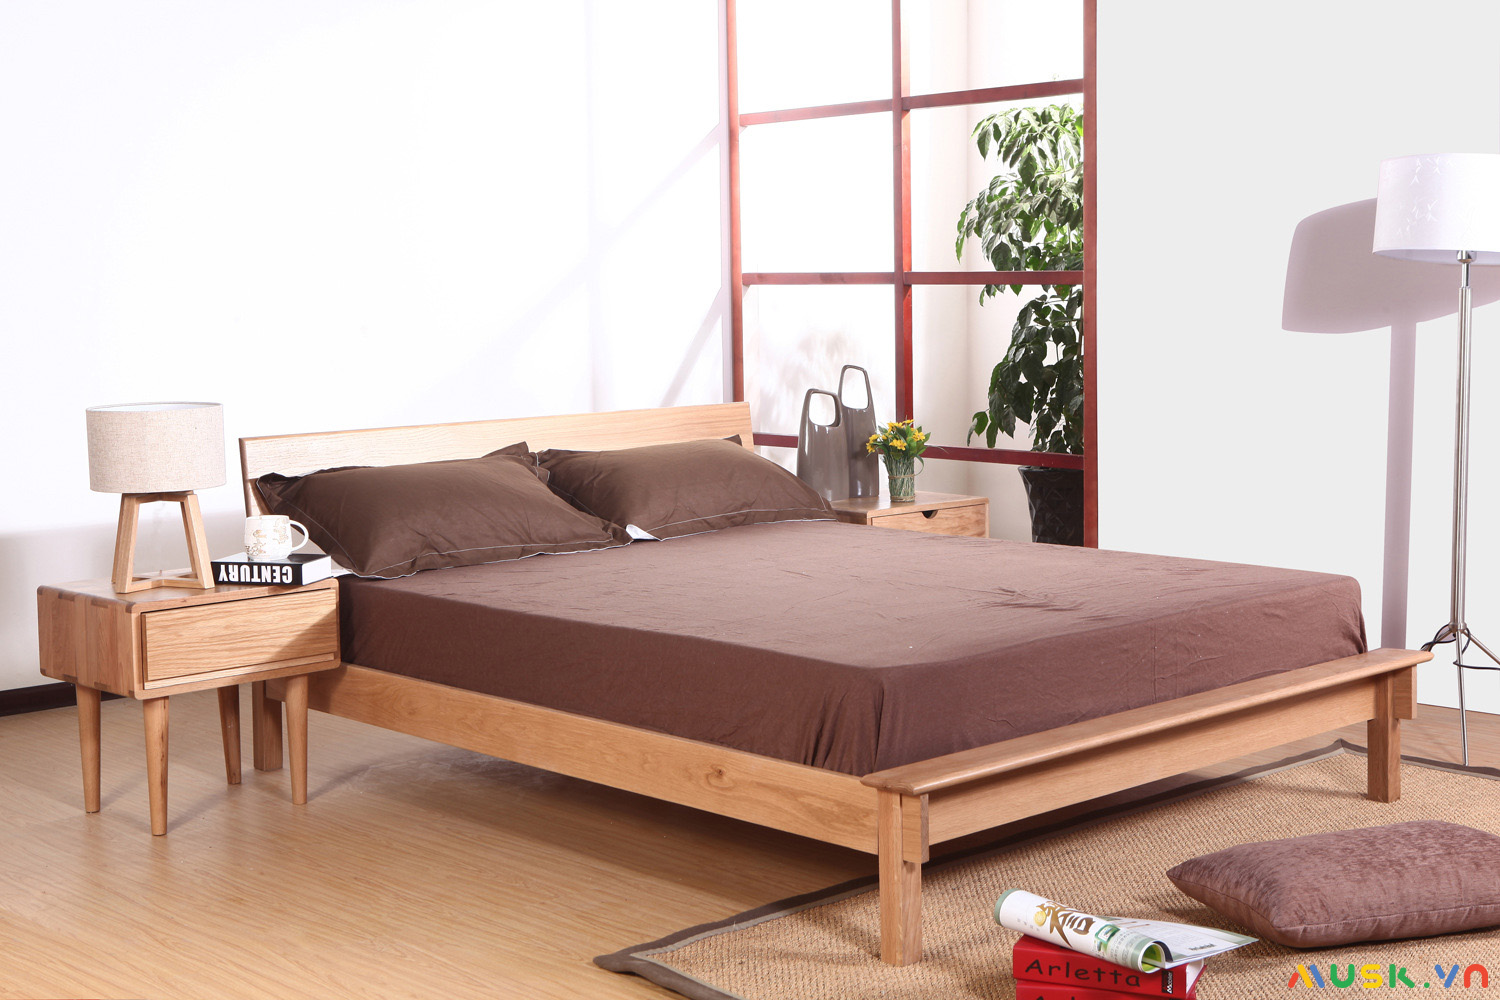 Xác định giường ngủ theo nguyên khí được dùng rất phổ biến trong phong thủy